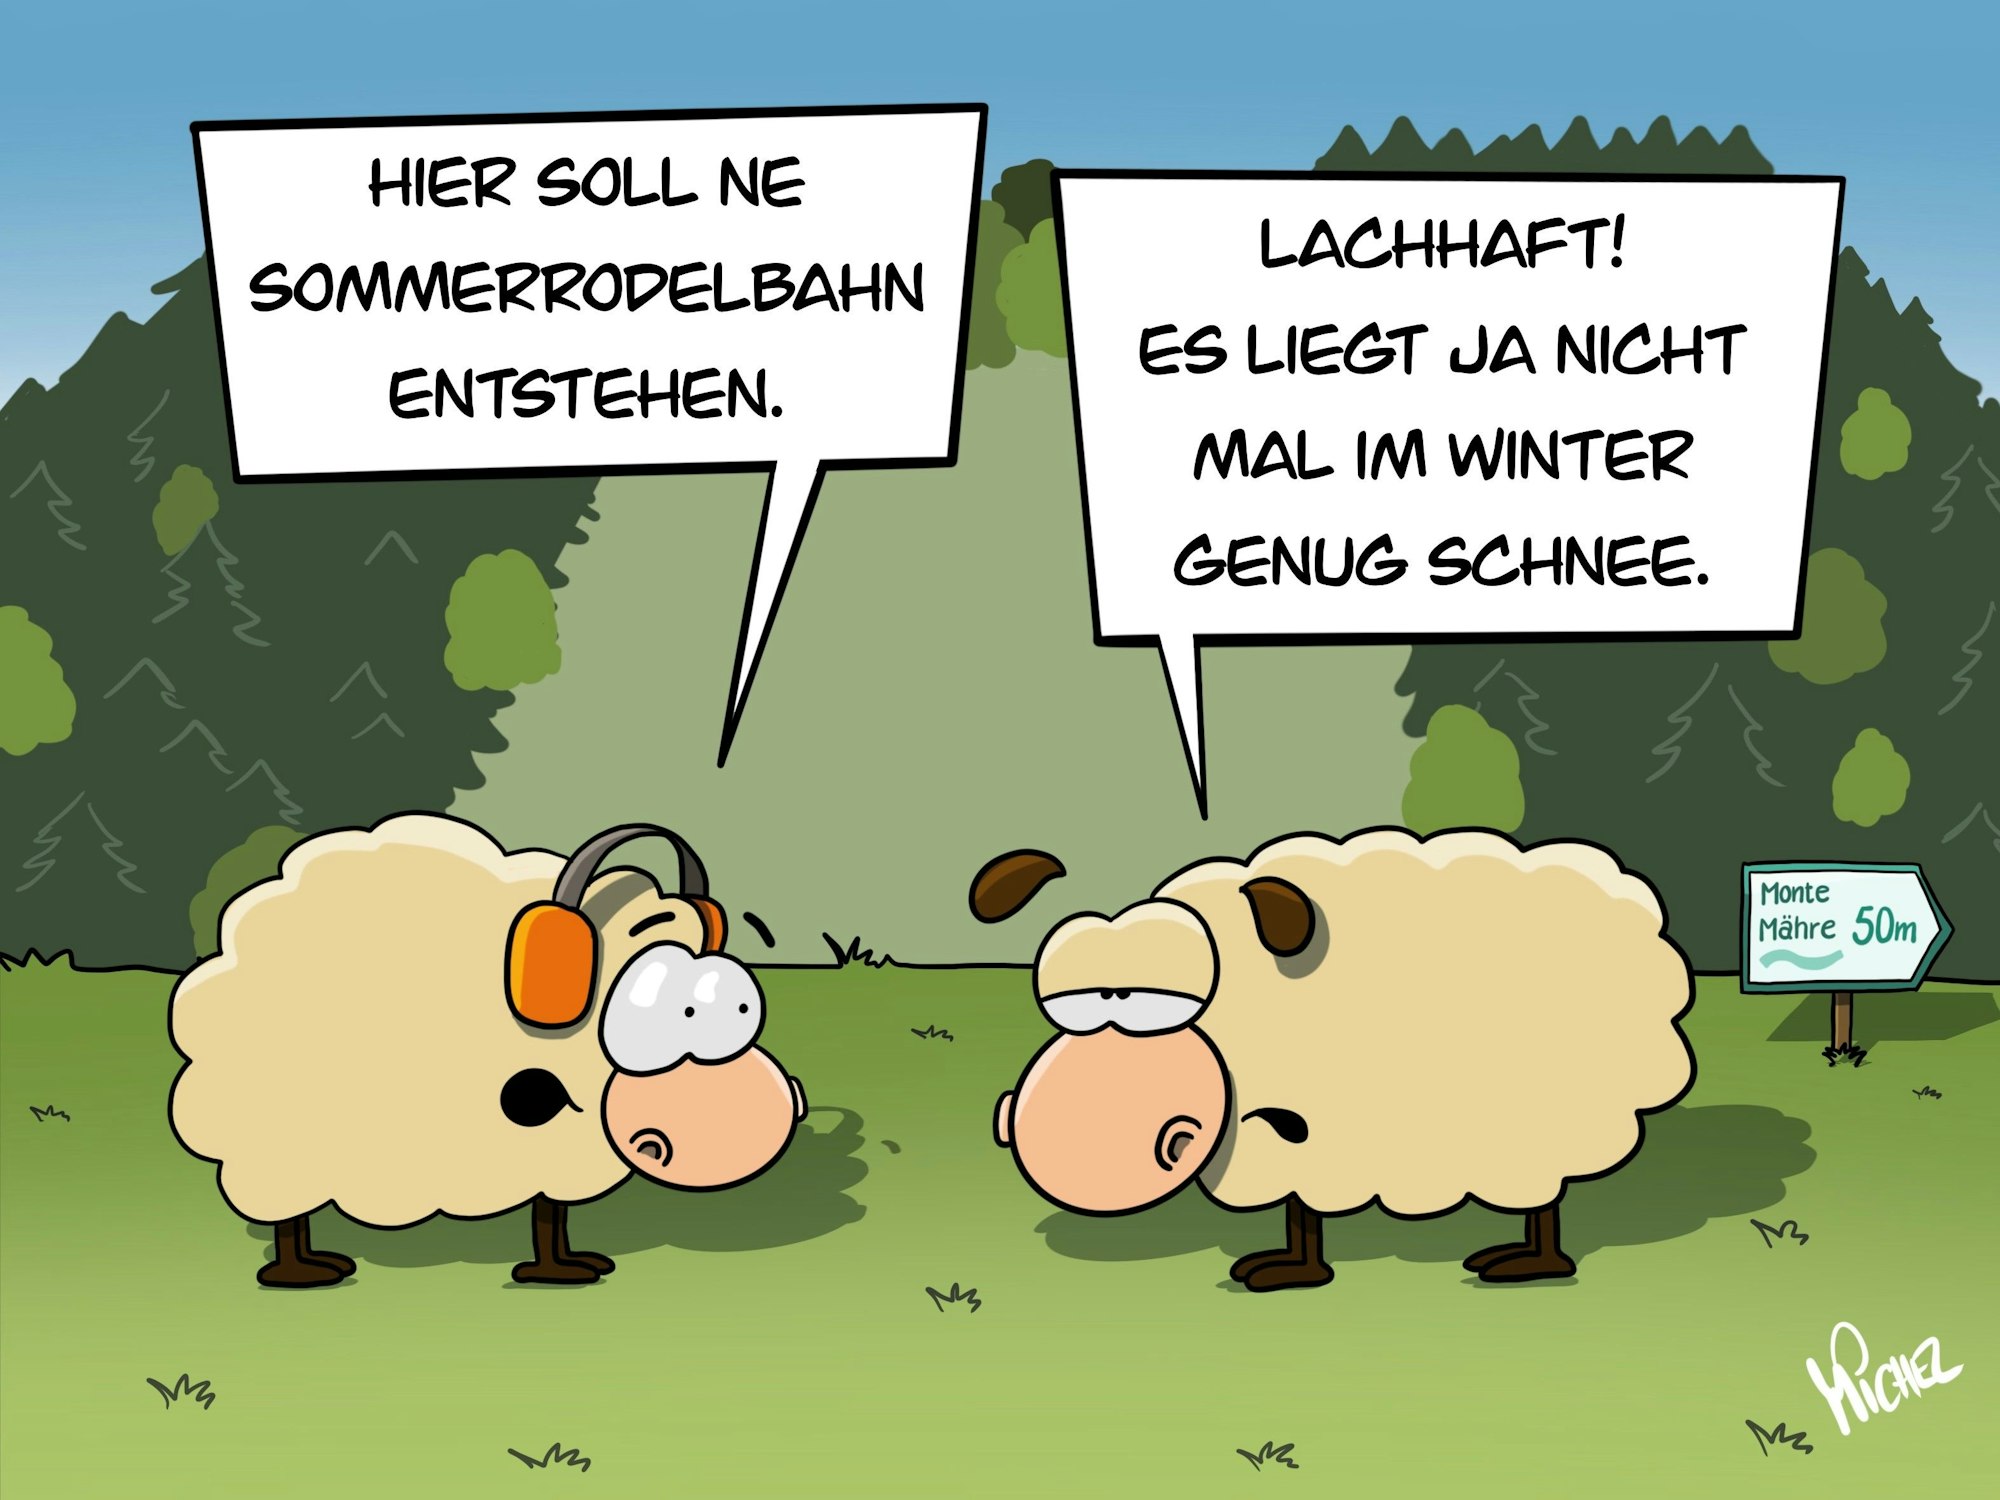 Zwei Schafe im Dialog. Das eine sagt: „Hier soll ne Sommerrodelbahn entstehen.“ Das andere meint trocken: „Lachhaft! Es liegt ja nicht mal im Winter genug Schnee.“